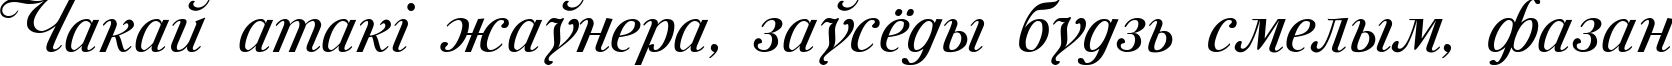 Пример написания шрифтом Mon Amour One Medium текста на белорусском